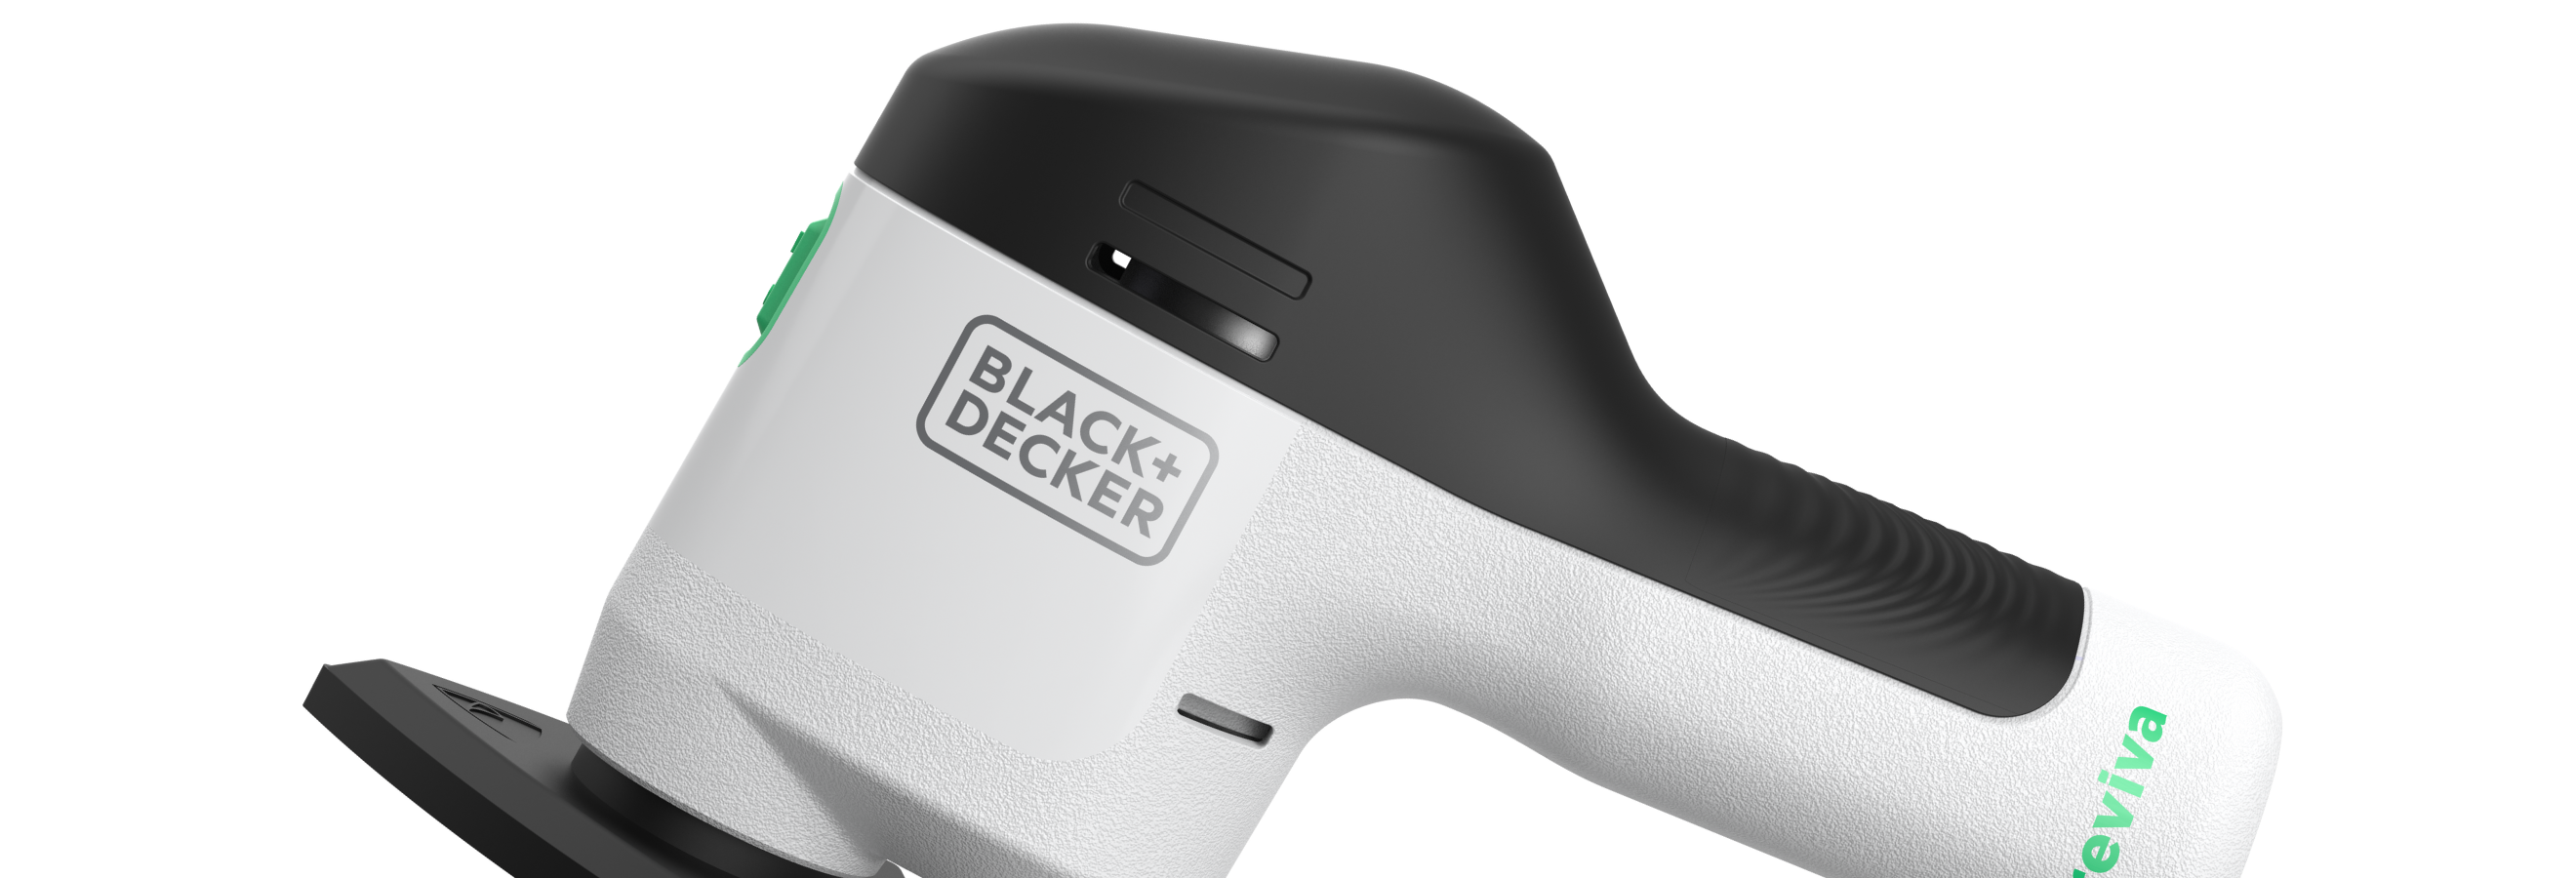 Black & Decker Revcms12c 12V Max Reviva Cordless Detail Sander